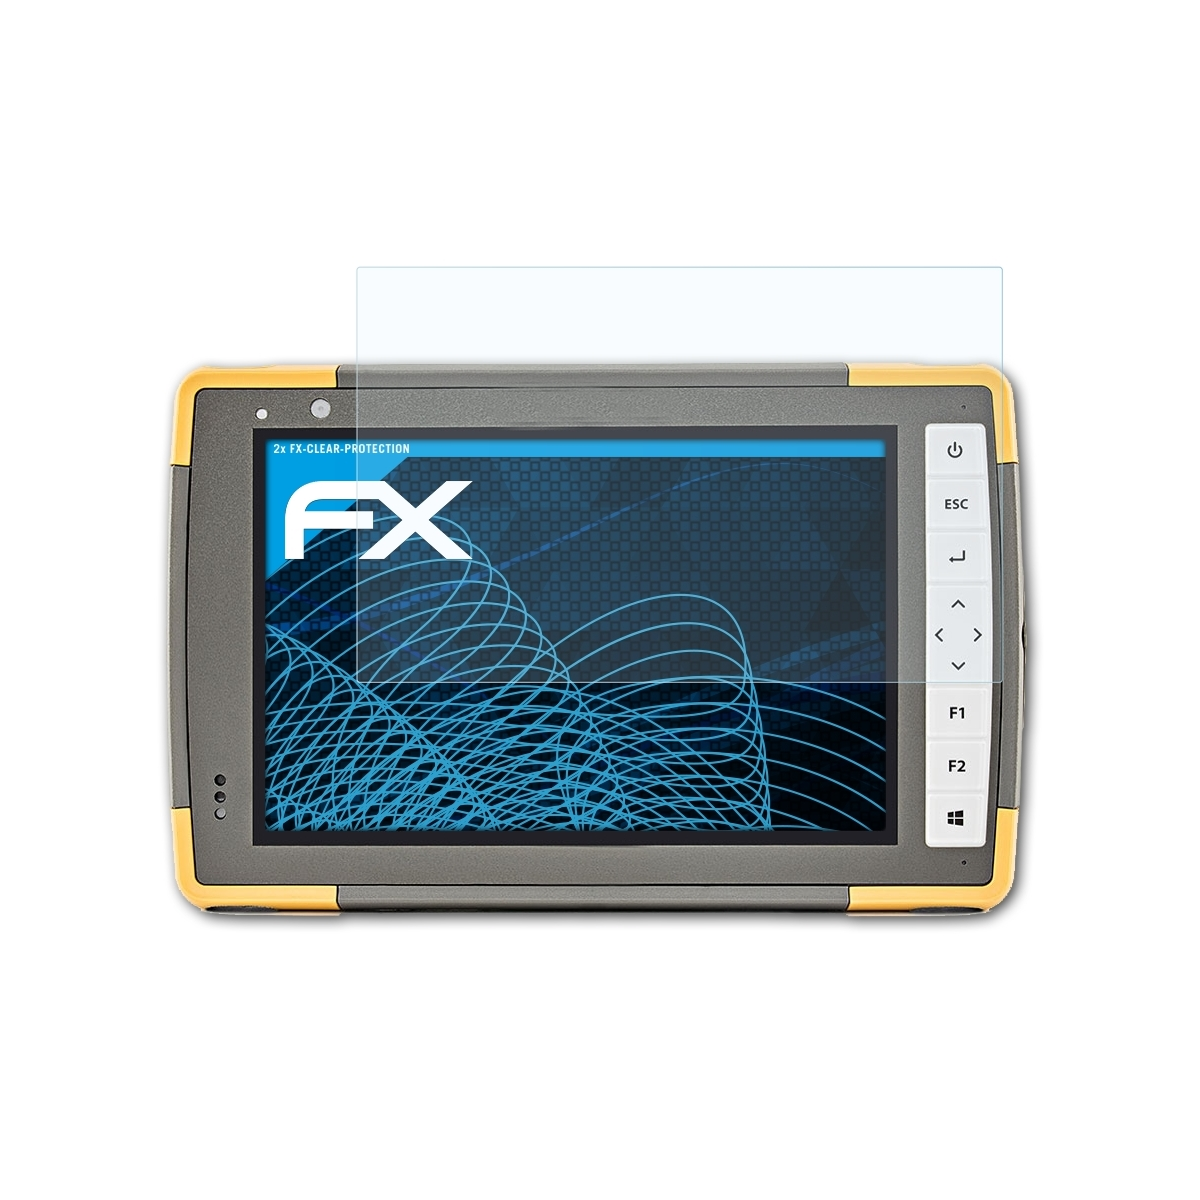 Displayschutz(für FC-5000) 2x Topcon ATFOLIX FX-Clear